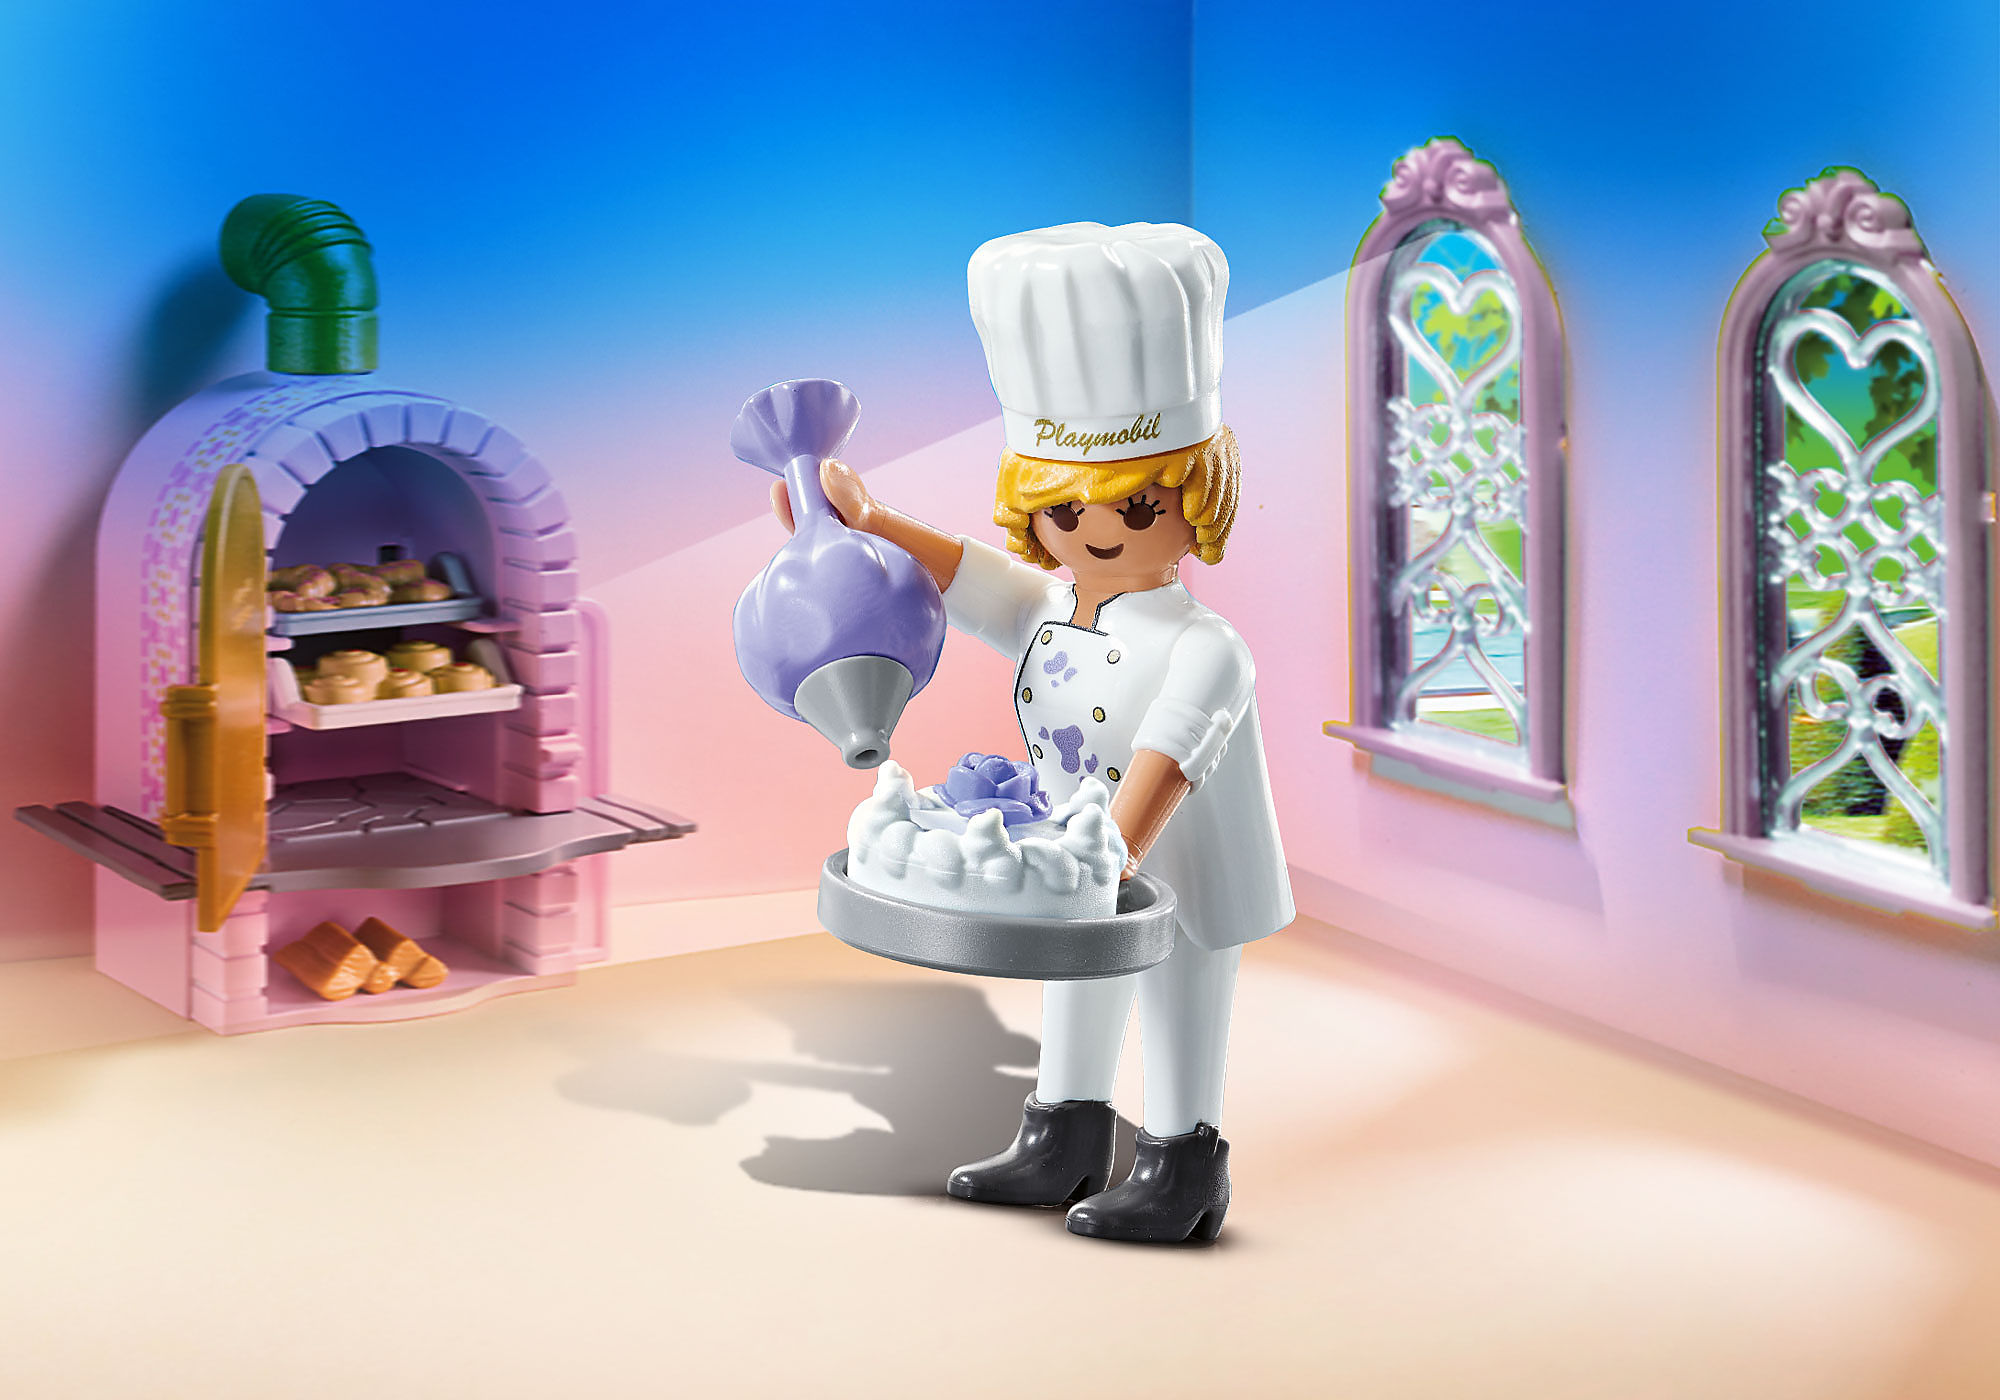 Playmobil - Cuisinière et cuisine moderne